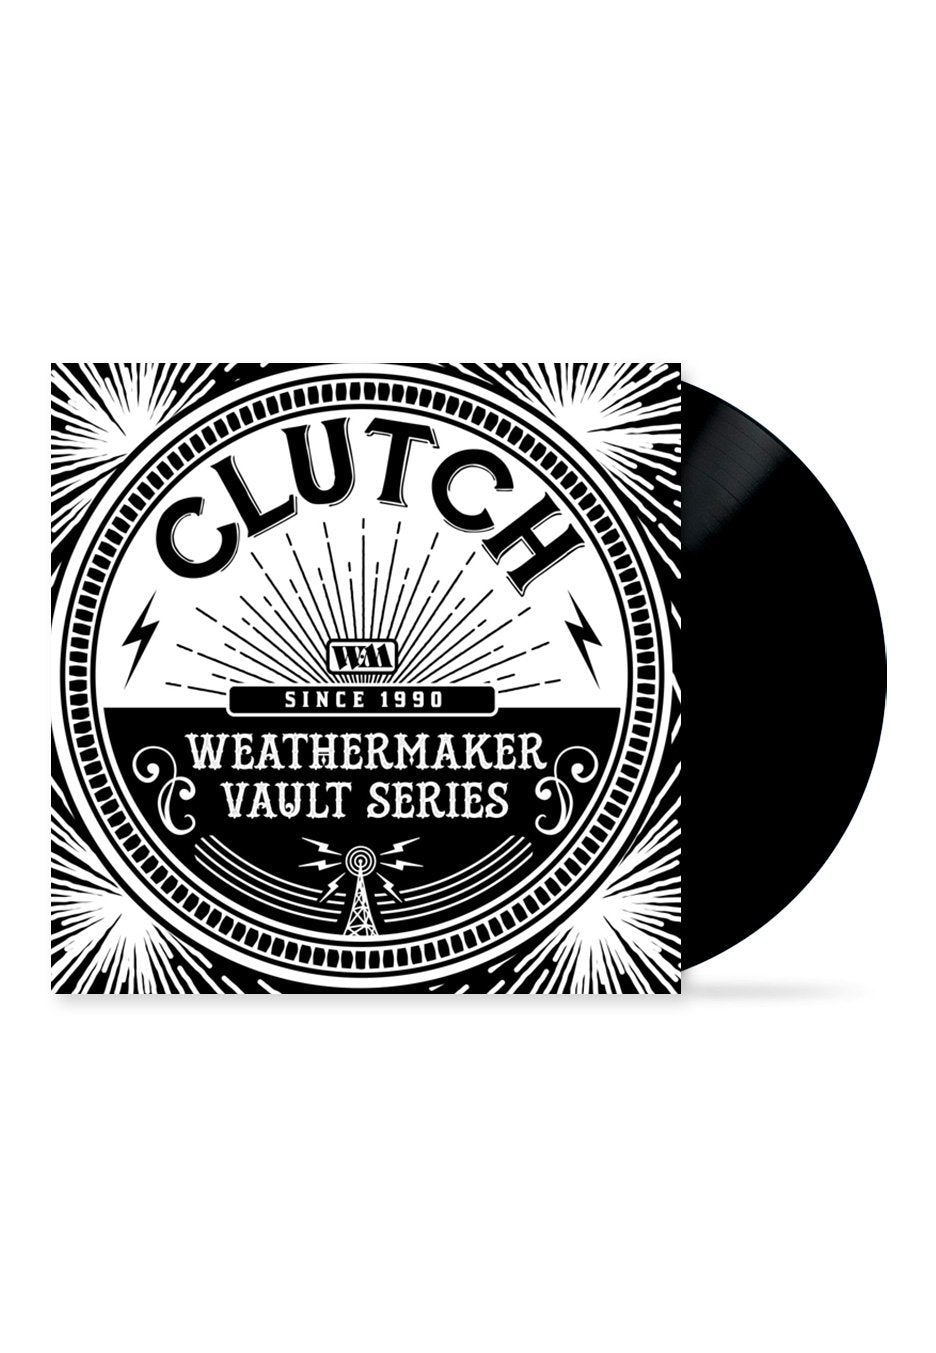 Clutch - The Weathermaker Vault Series Vol.1 - Vinyl